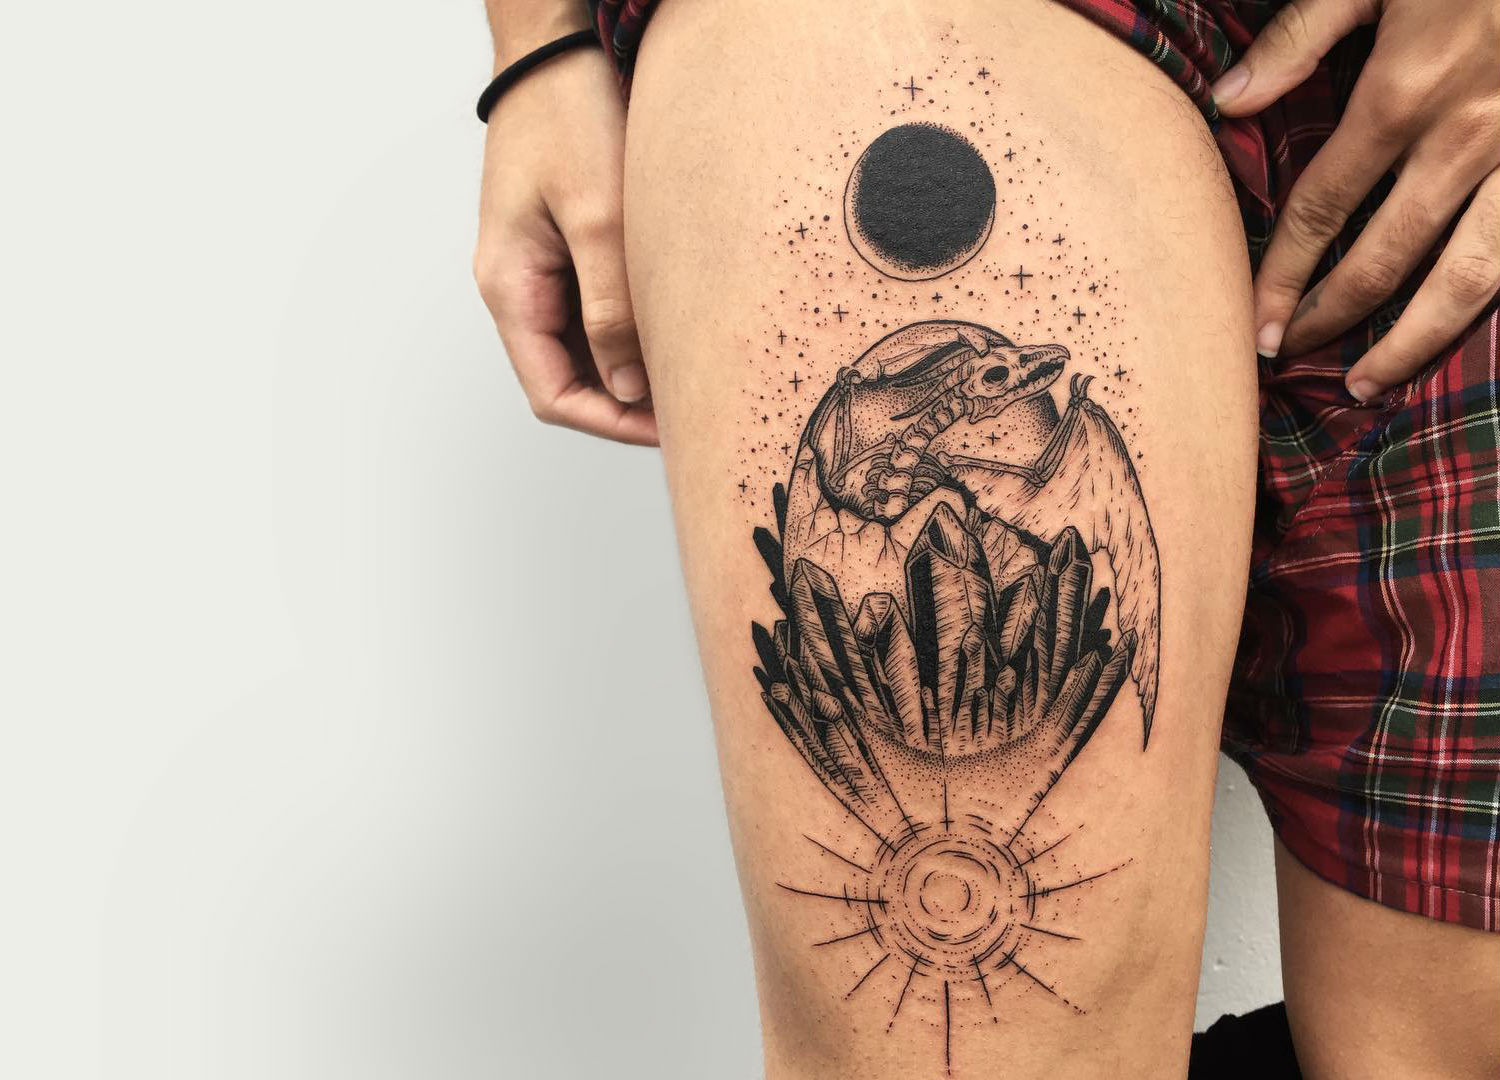 Dragon skeleton engraving tattoo by Portland artist A Junko Osaki